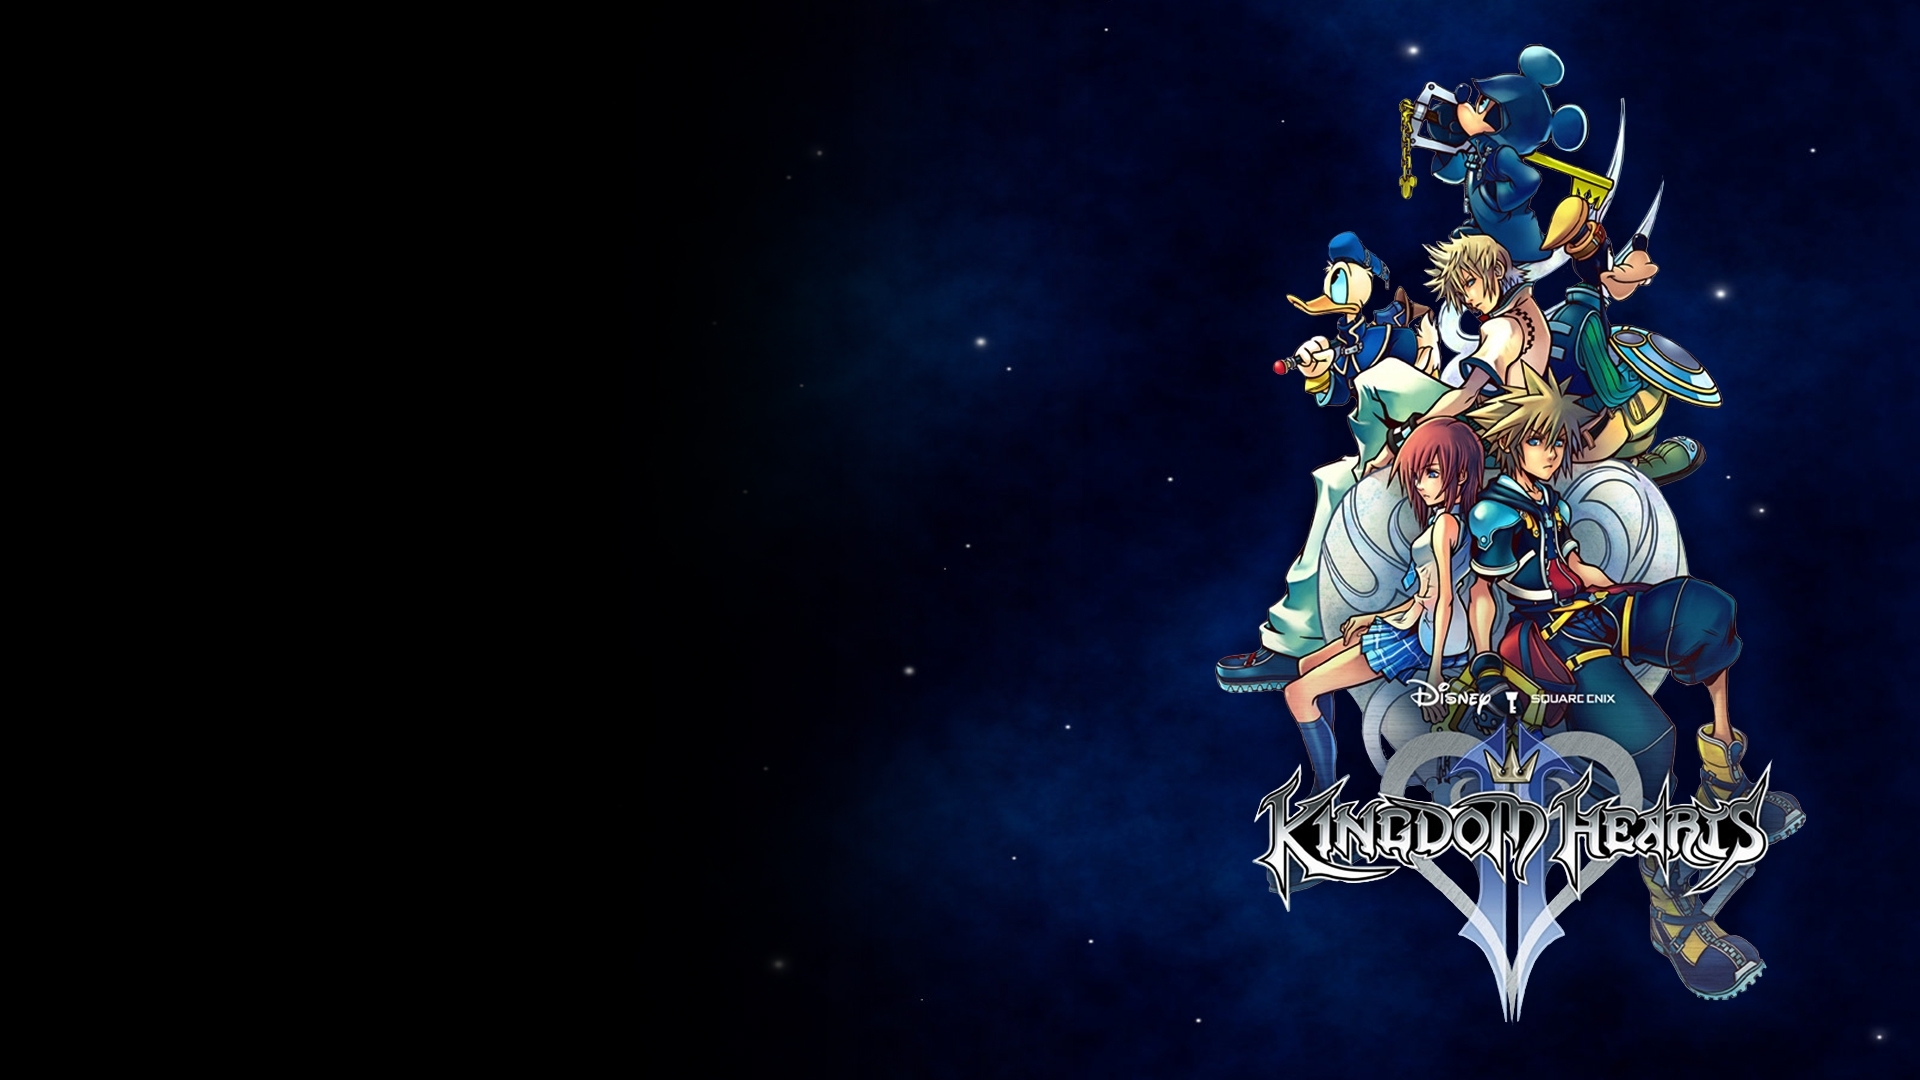 Kingdom Hearts Ii Wallpaper Full Hd Fond D&amp - Kingdom Hearts 3 Background , HD Wallpaper & Backgrounds